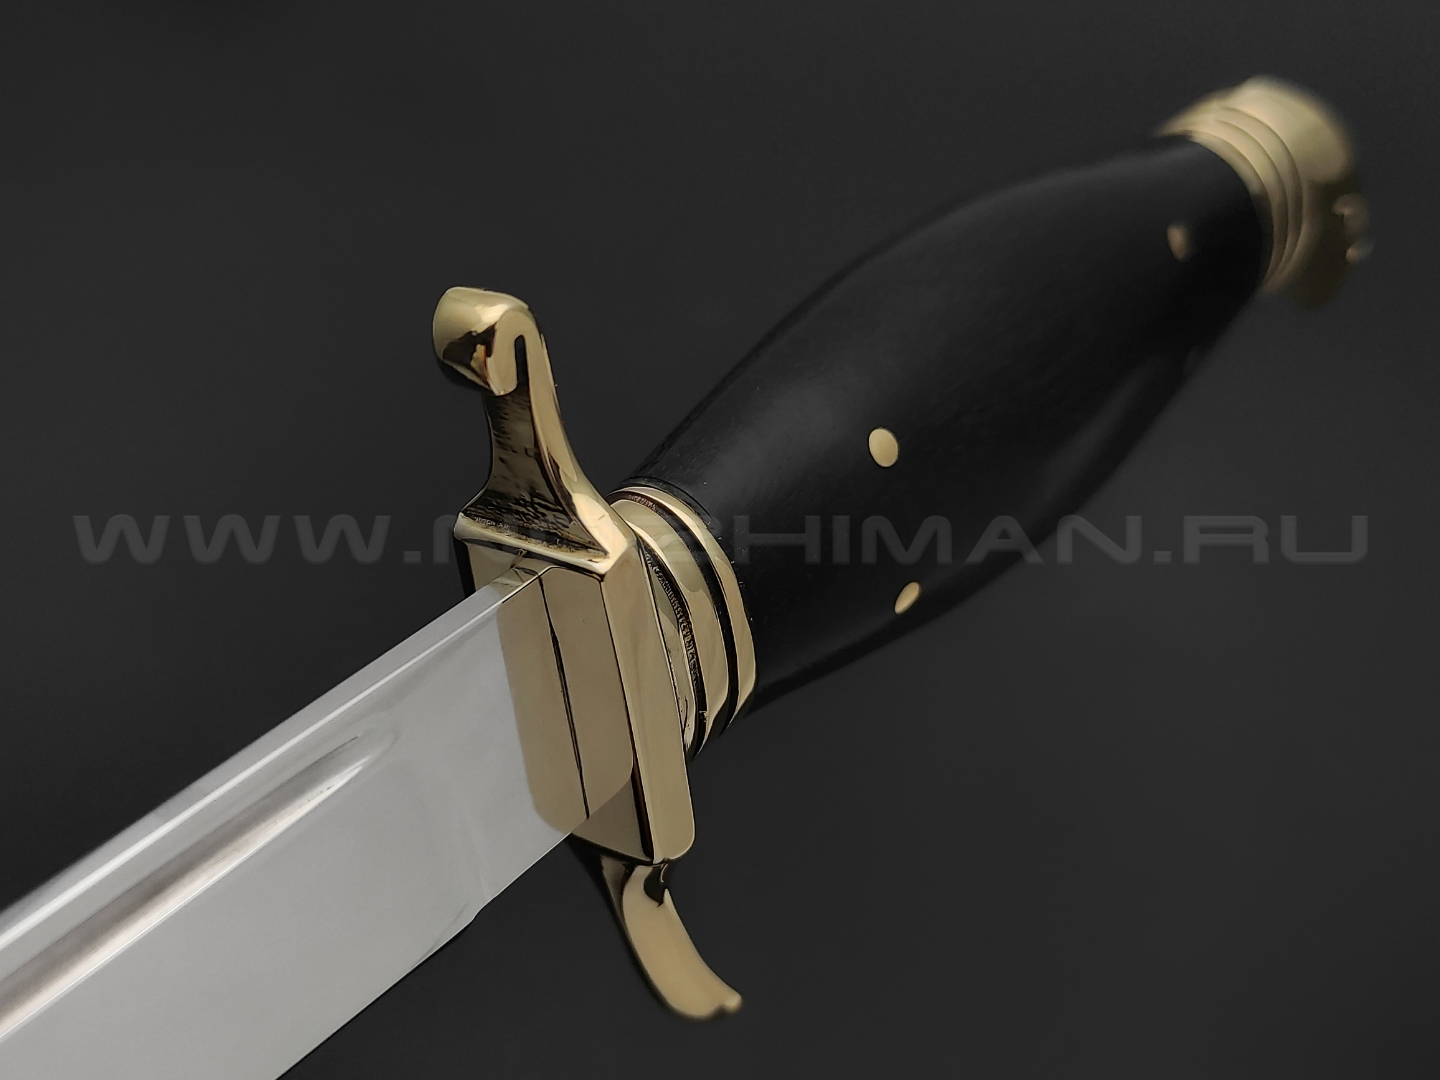 Товарищество Завьялова нож "НКВД" сталь K340, рукоять граб, латунь, деревянные ножны